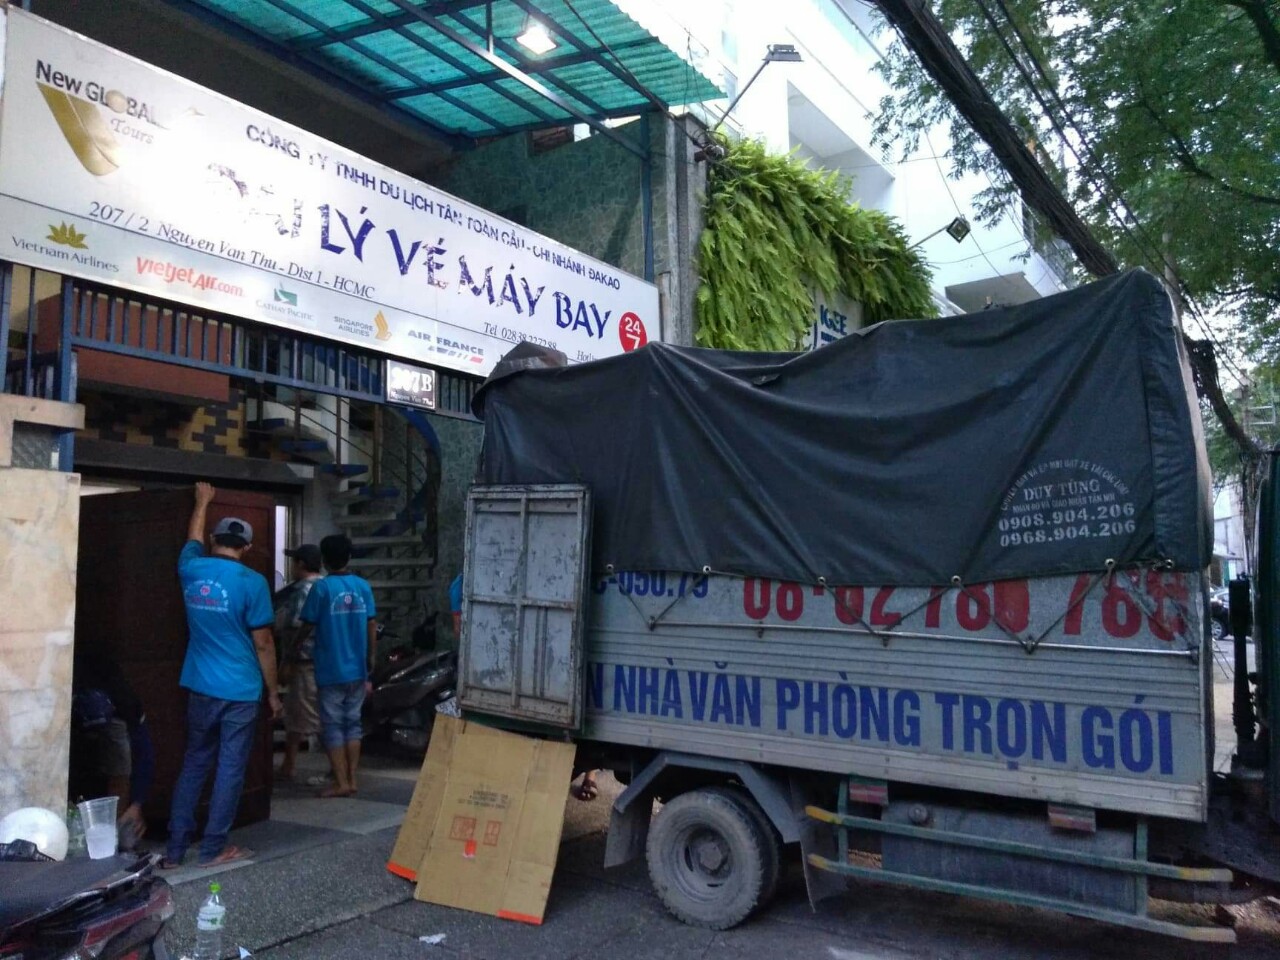 Chuyển nhà trọn gói quận Bình Thạnh Thành Phố Hồ Chí Minh: Dịch vụ đáng tin cậy tại Chuyển Nhà Sài Gòn